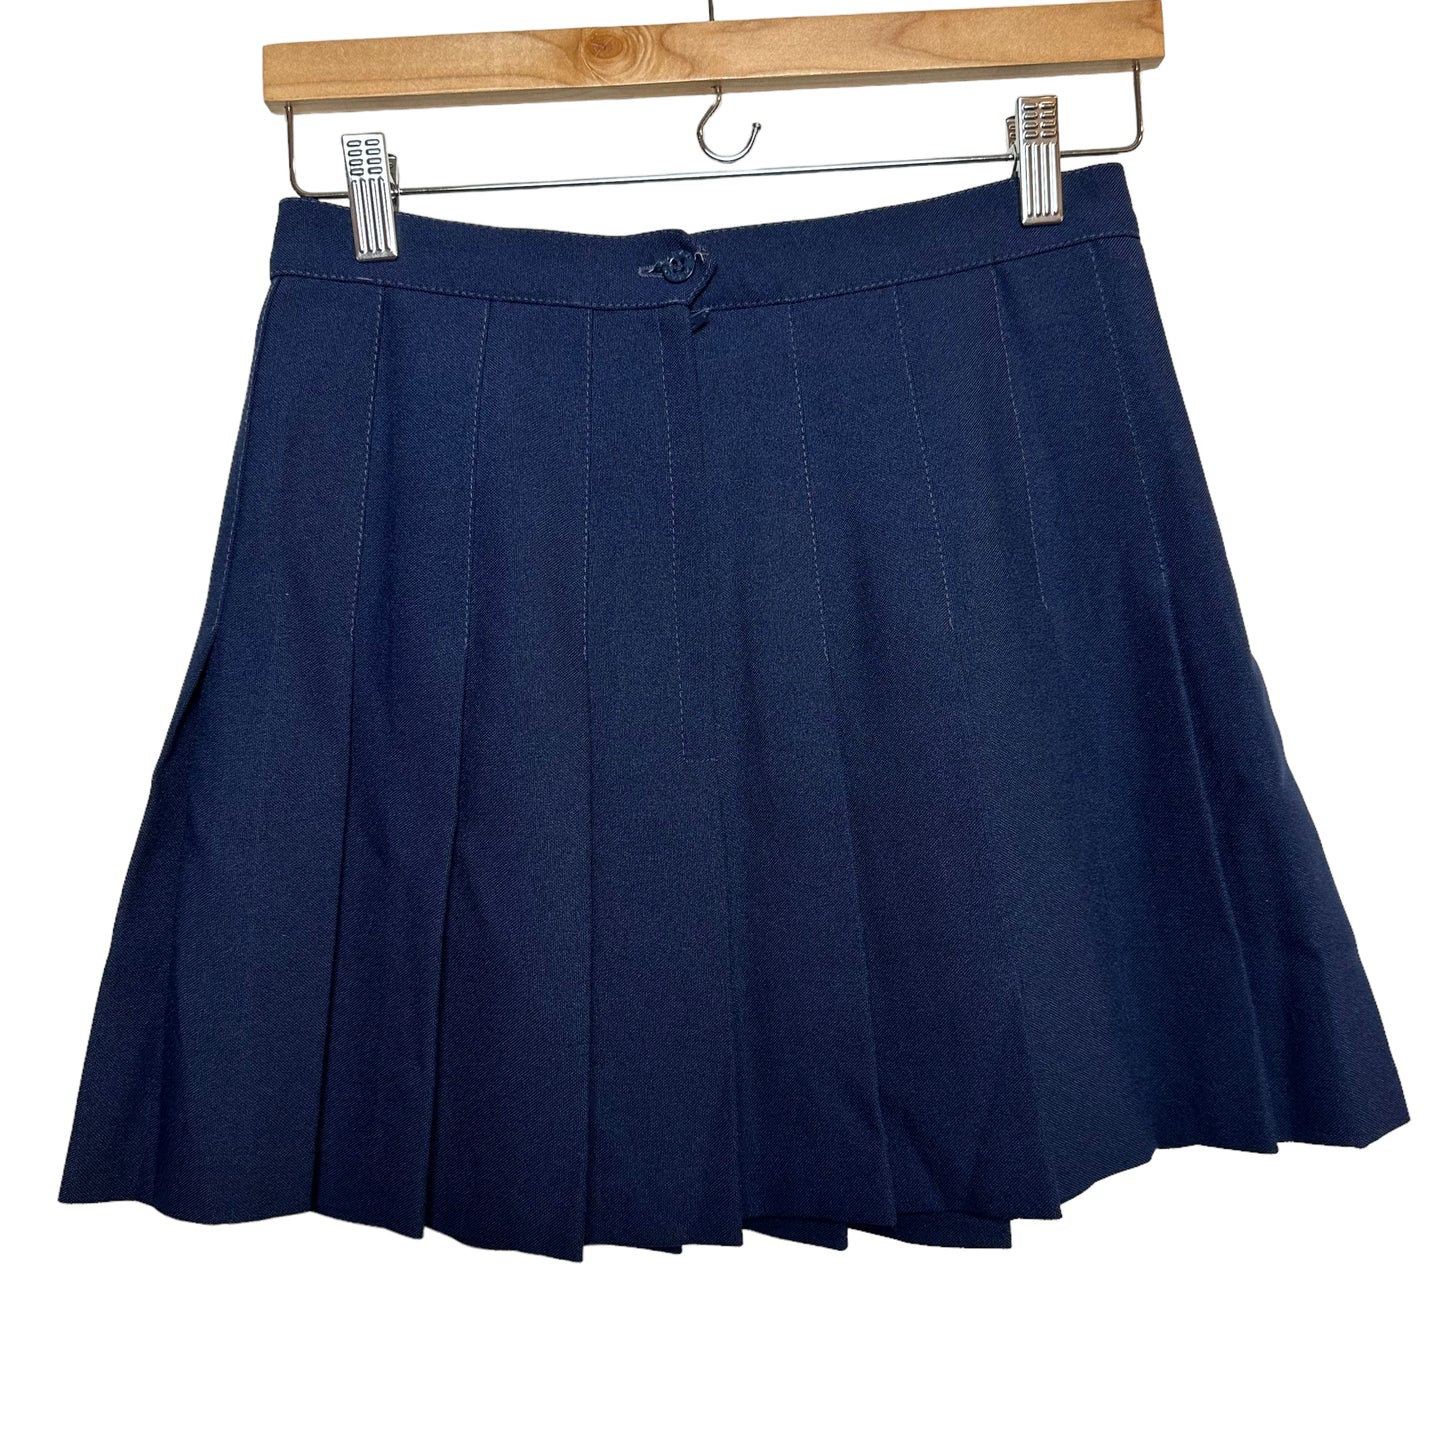 Vintage Head Pleated Mini Skirt Navy Blue 27